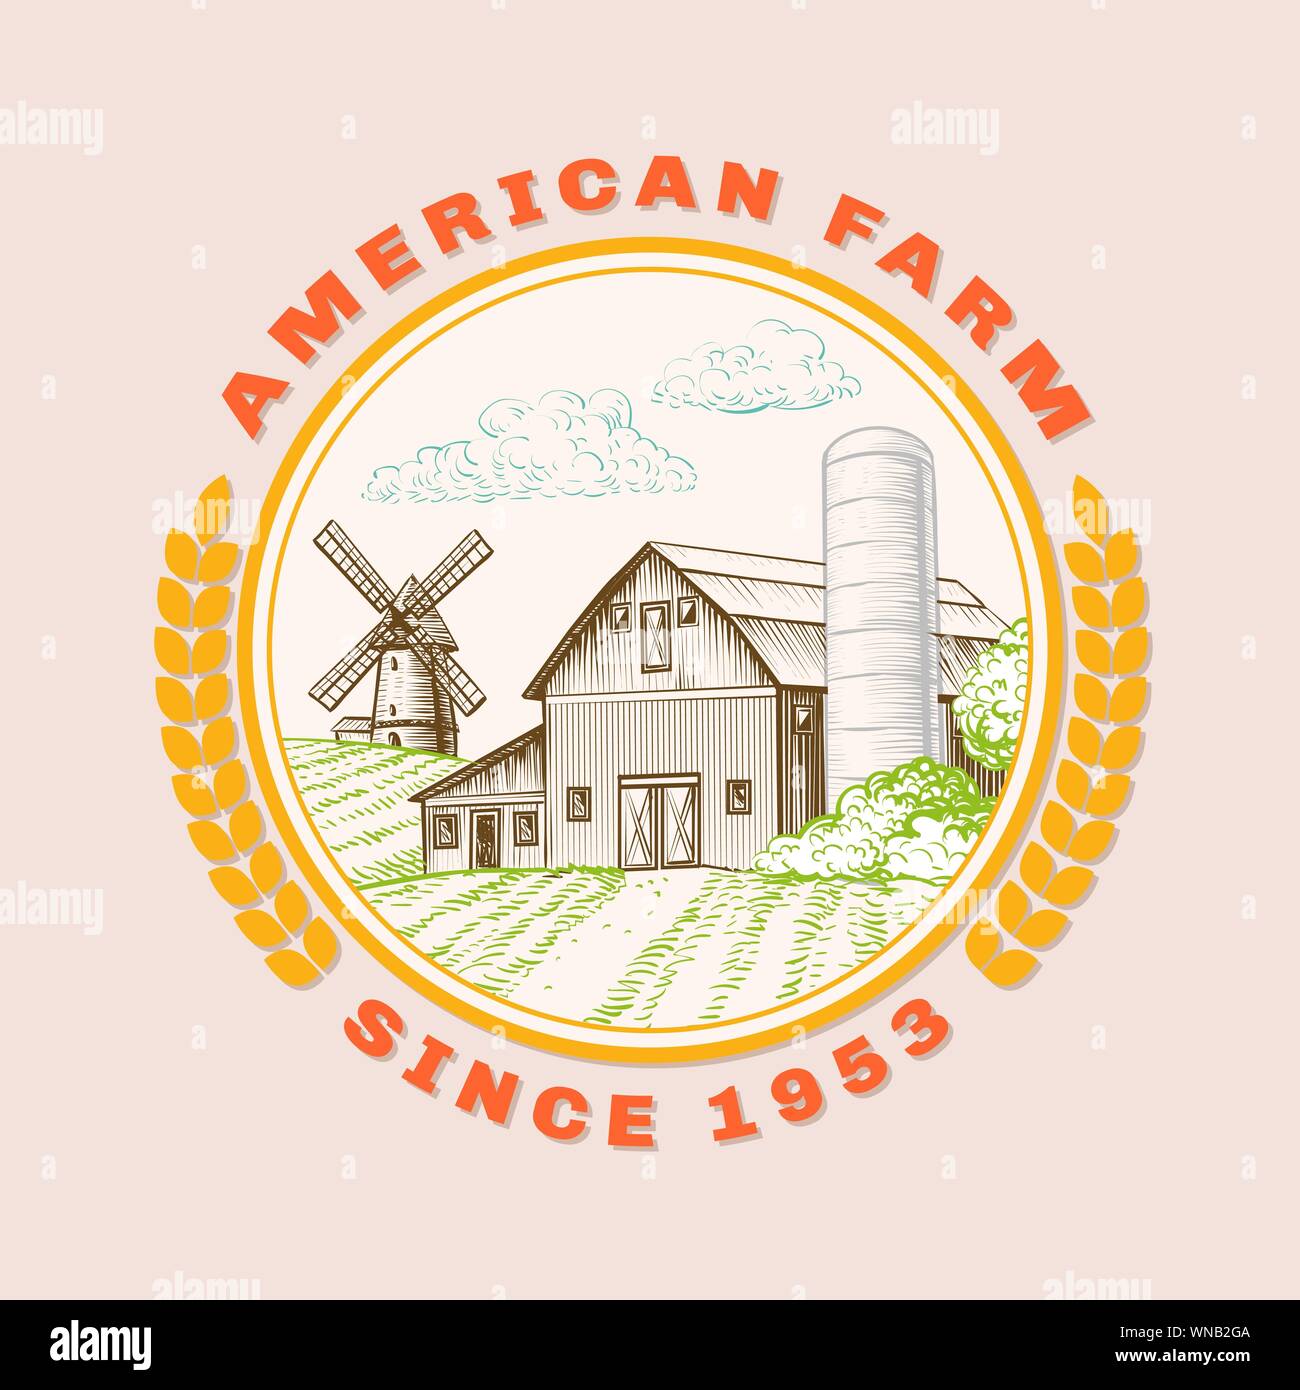 American farm barn per l'agricoltura con il mulino a vento, logo. Handdrawn illustrazione nella cornice rotonda con spighe di grano. Vettore poster vintage sul raccolto, prodotti bio, eco tema. Scenic rurale in stile di disegno Illustrazione Vettoriale